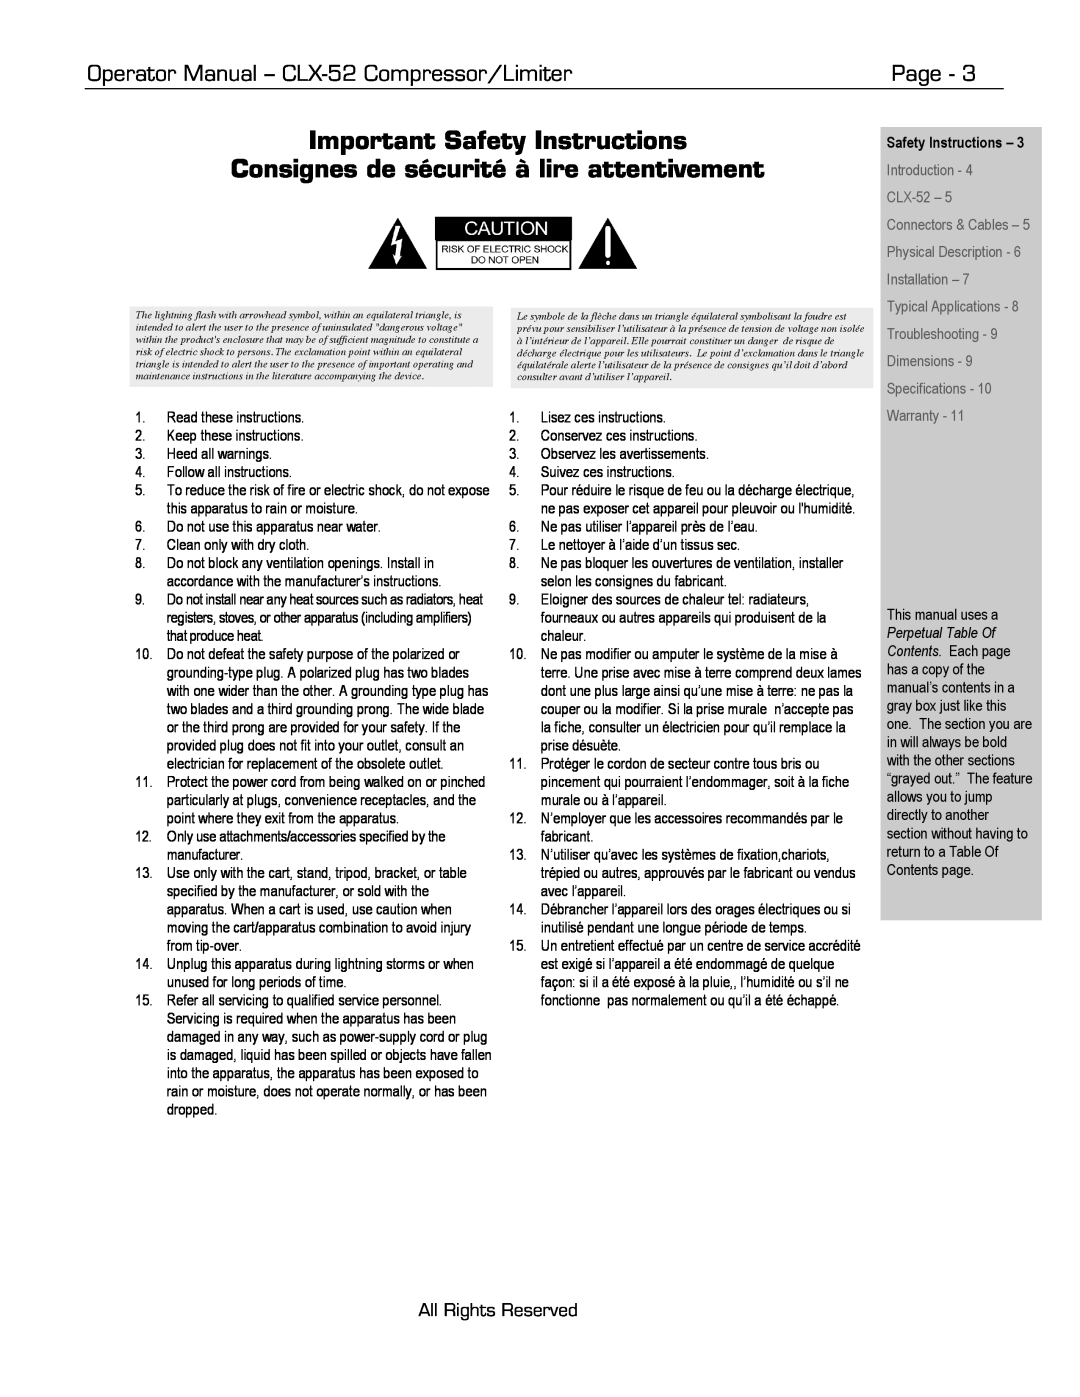 Ashly CLX-52 manual Important Safety Instructions, Consignes de sécurité à lire attentivement, Page, All Rights Reserved 